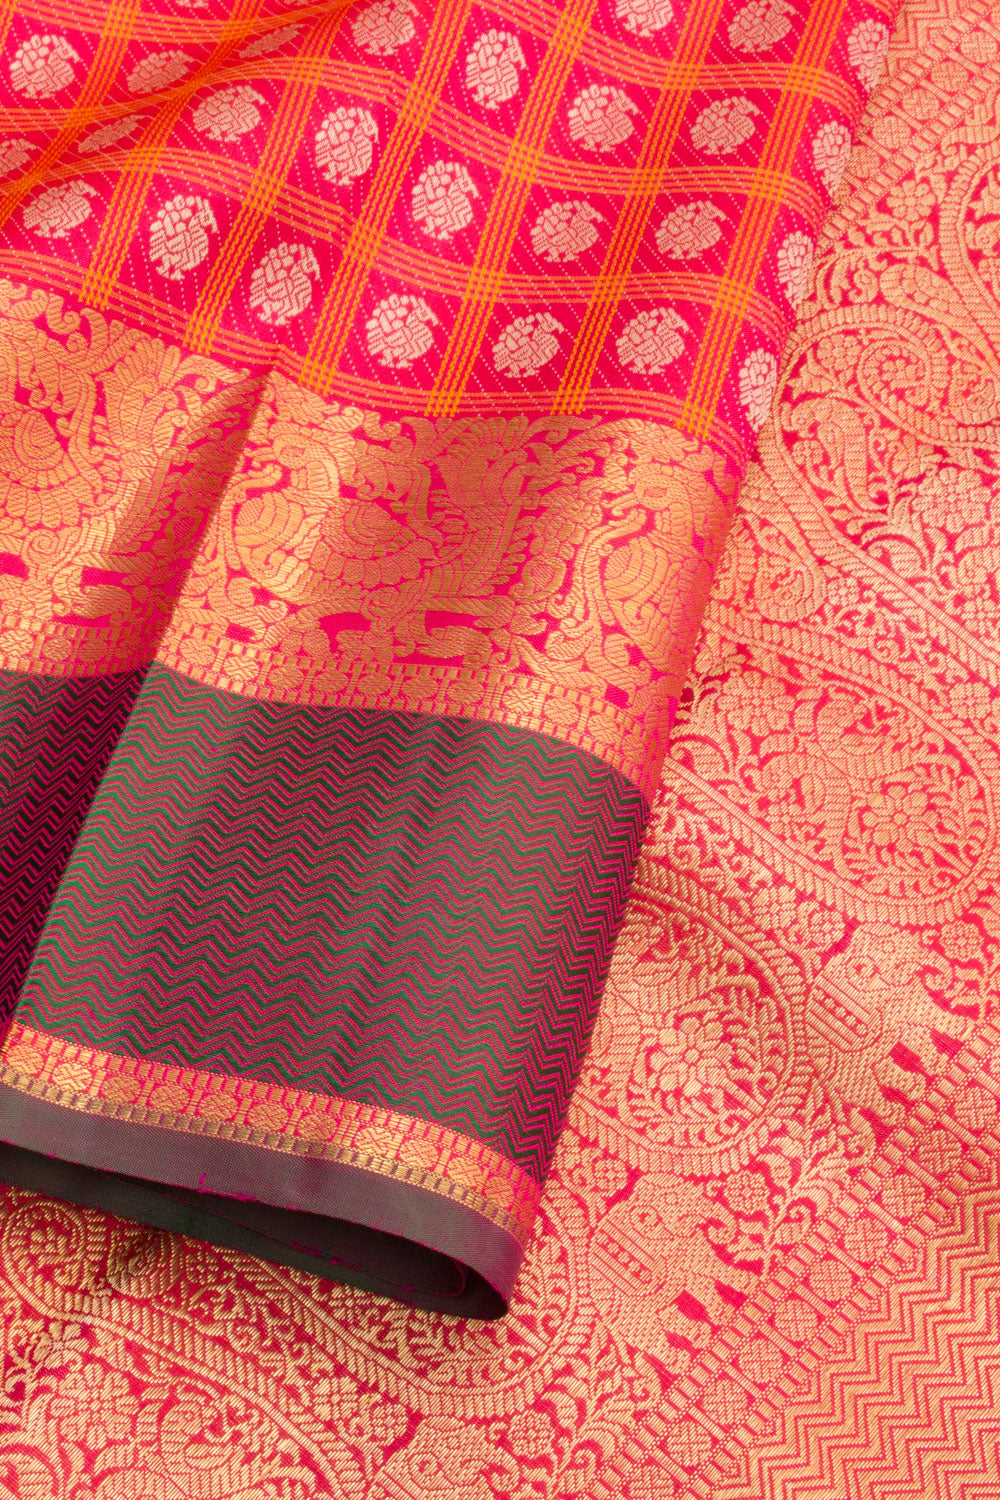 Reddish Pink Pure Zari Jacquard Kanjivaram Silk Saree 10061537